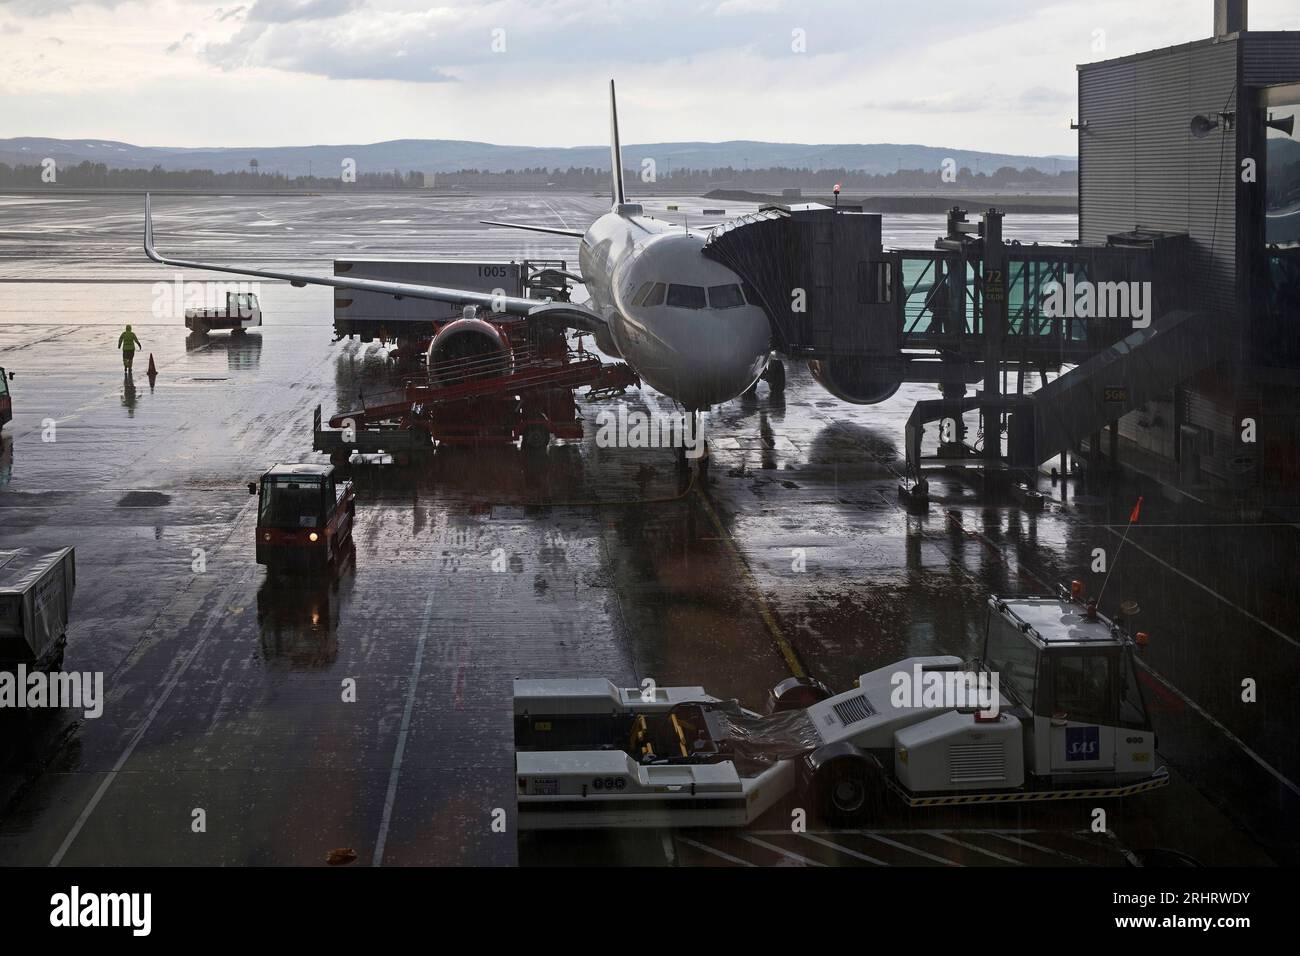 Condiciones difíciles debido a las fuertes lluvias en el aeropuerto al cargar un avión, Noruega, Oslo Foto de stock